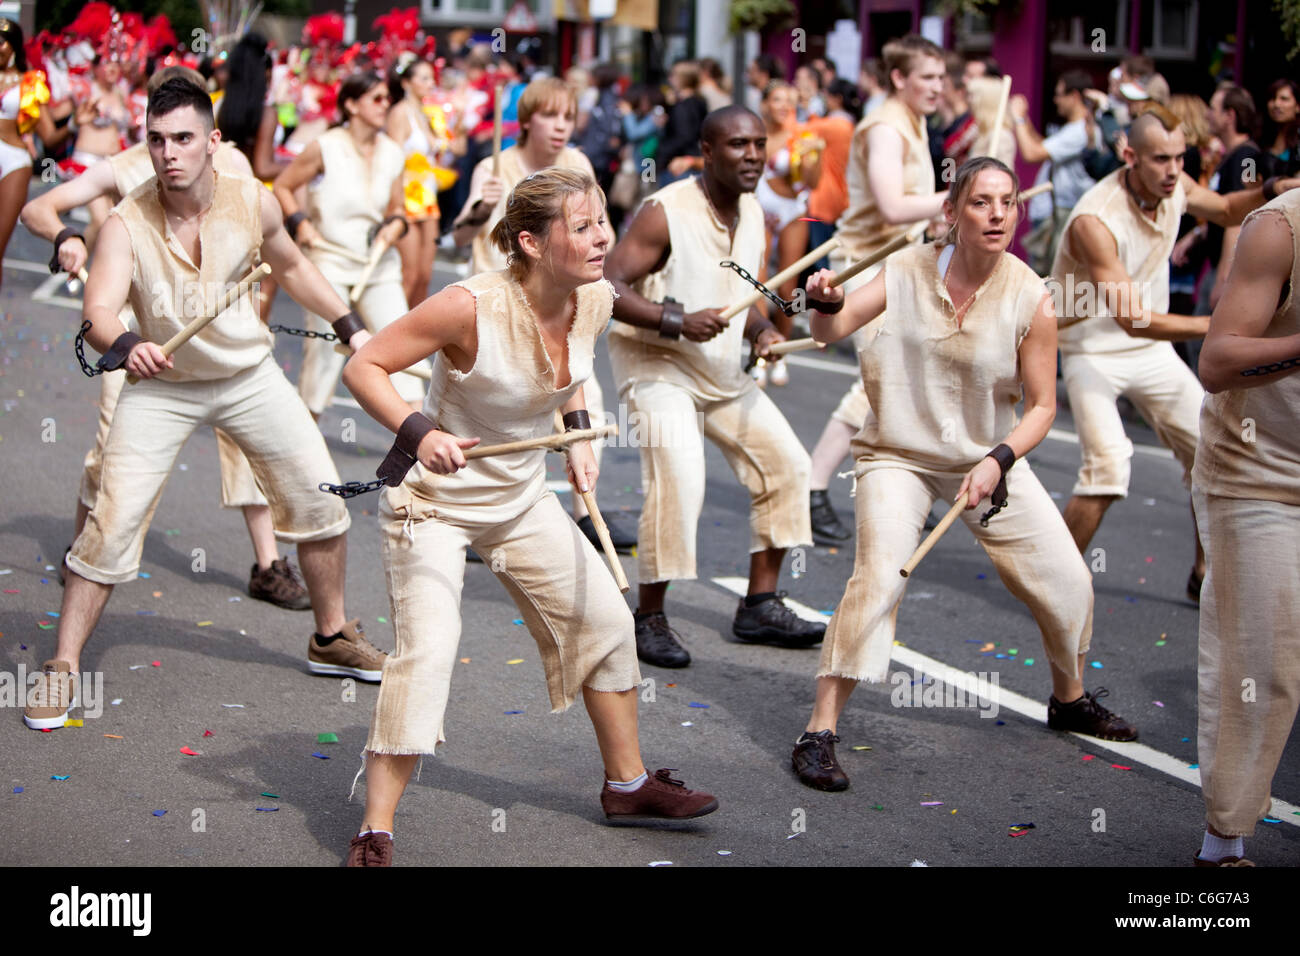 Danseuses de l'école de samba au Notting Hill Carnival, Londres, Angleterre, Royaume-Uni. Banque D'Images